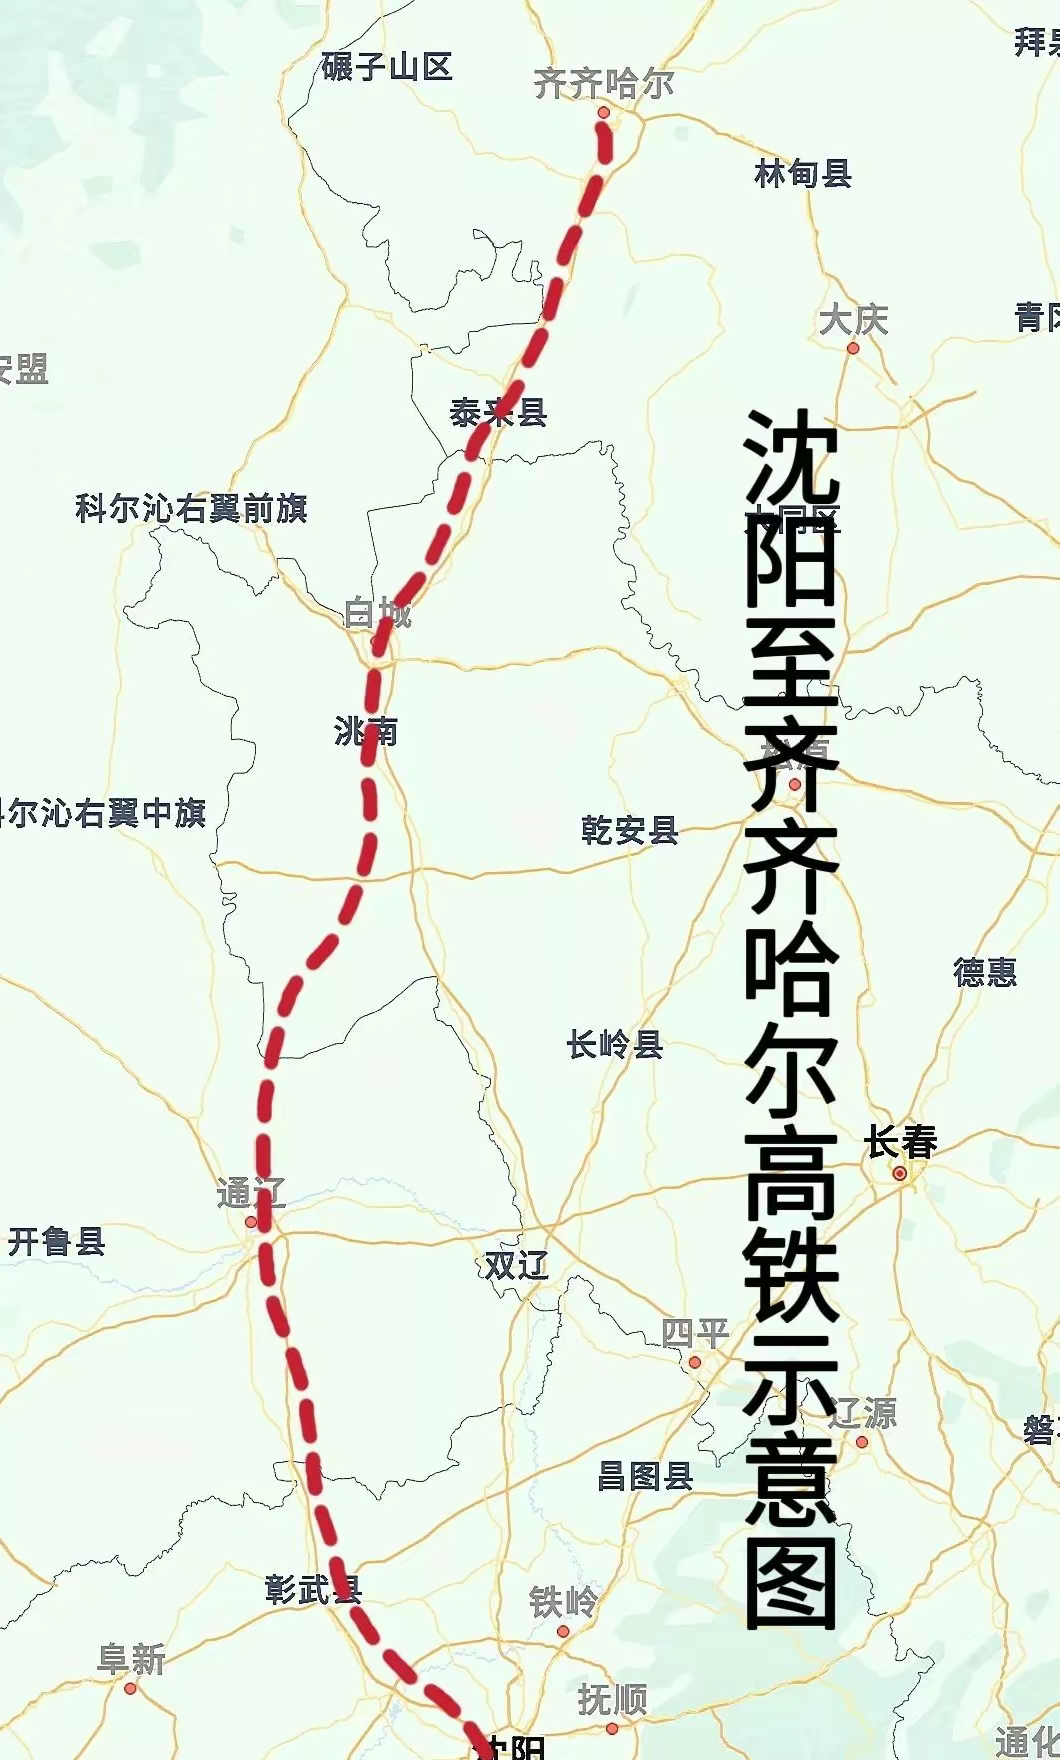 齐齐哈尔南下直达沈阳高铁建设加速,东北地区交通更便捷高效